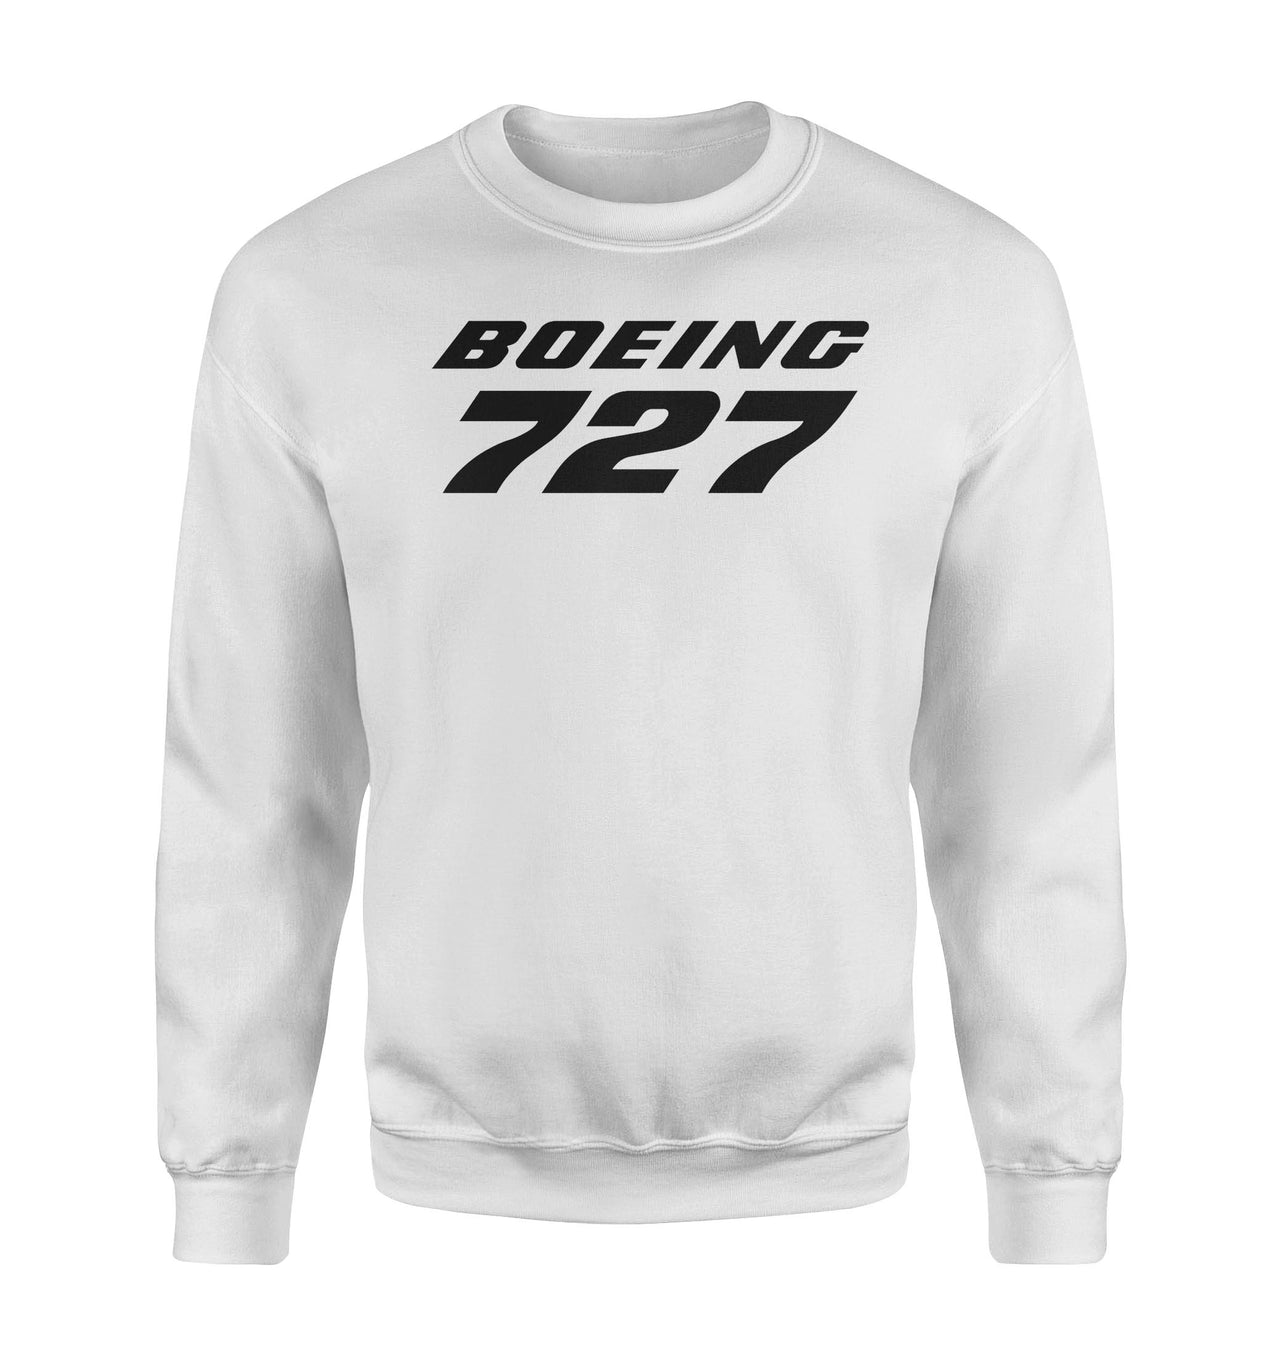 Boeing 727 & Text Designed Sweatshirts